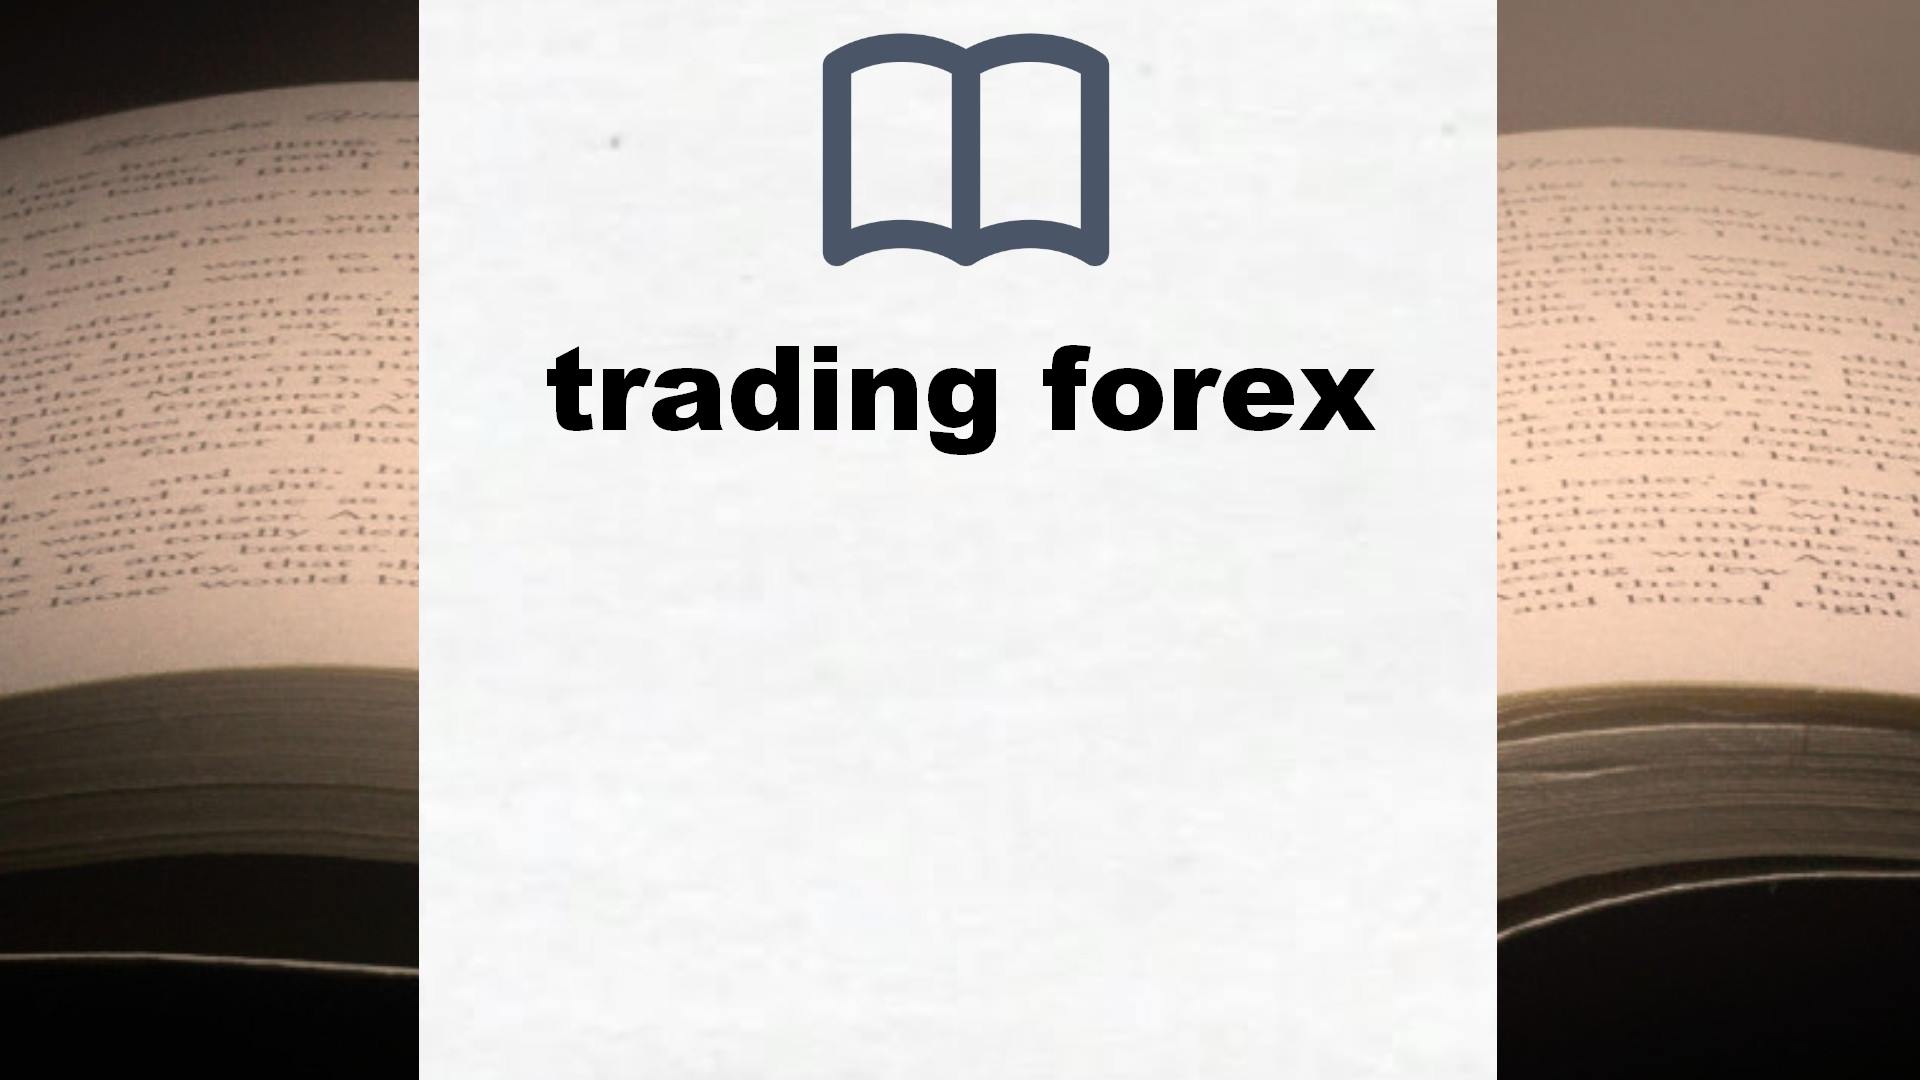 Libros sobre trading forex